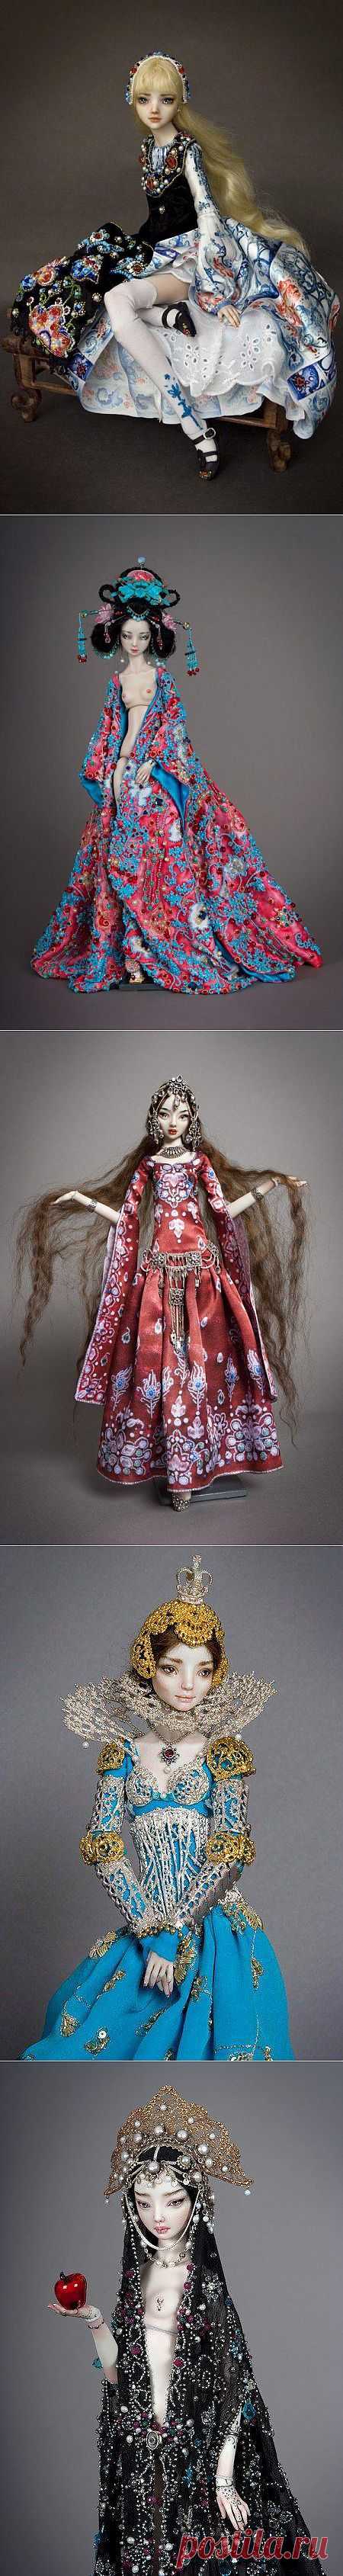 Фарфоровые куклы для взрослых - Ярмарка Мастеров - ручная работа, handmade